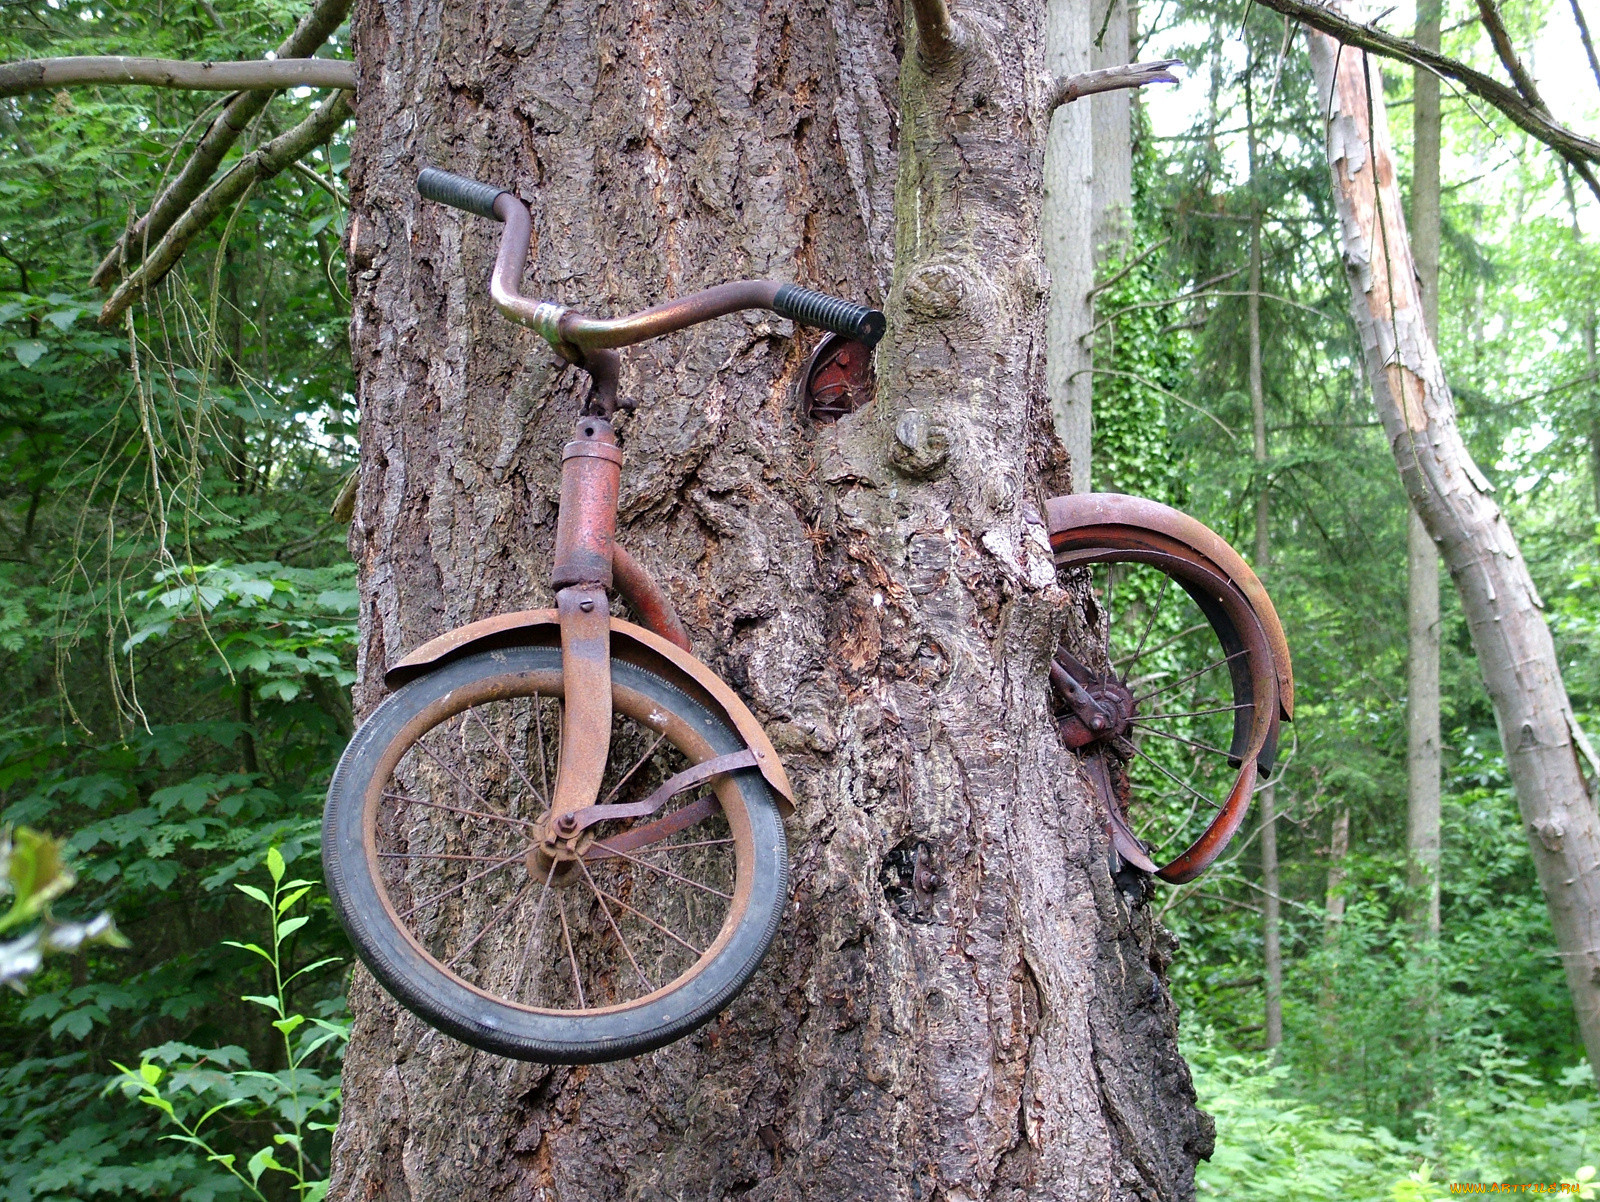 Велосипед возле дерева